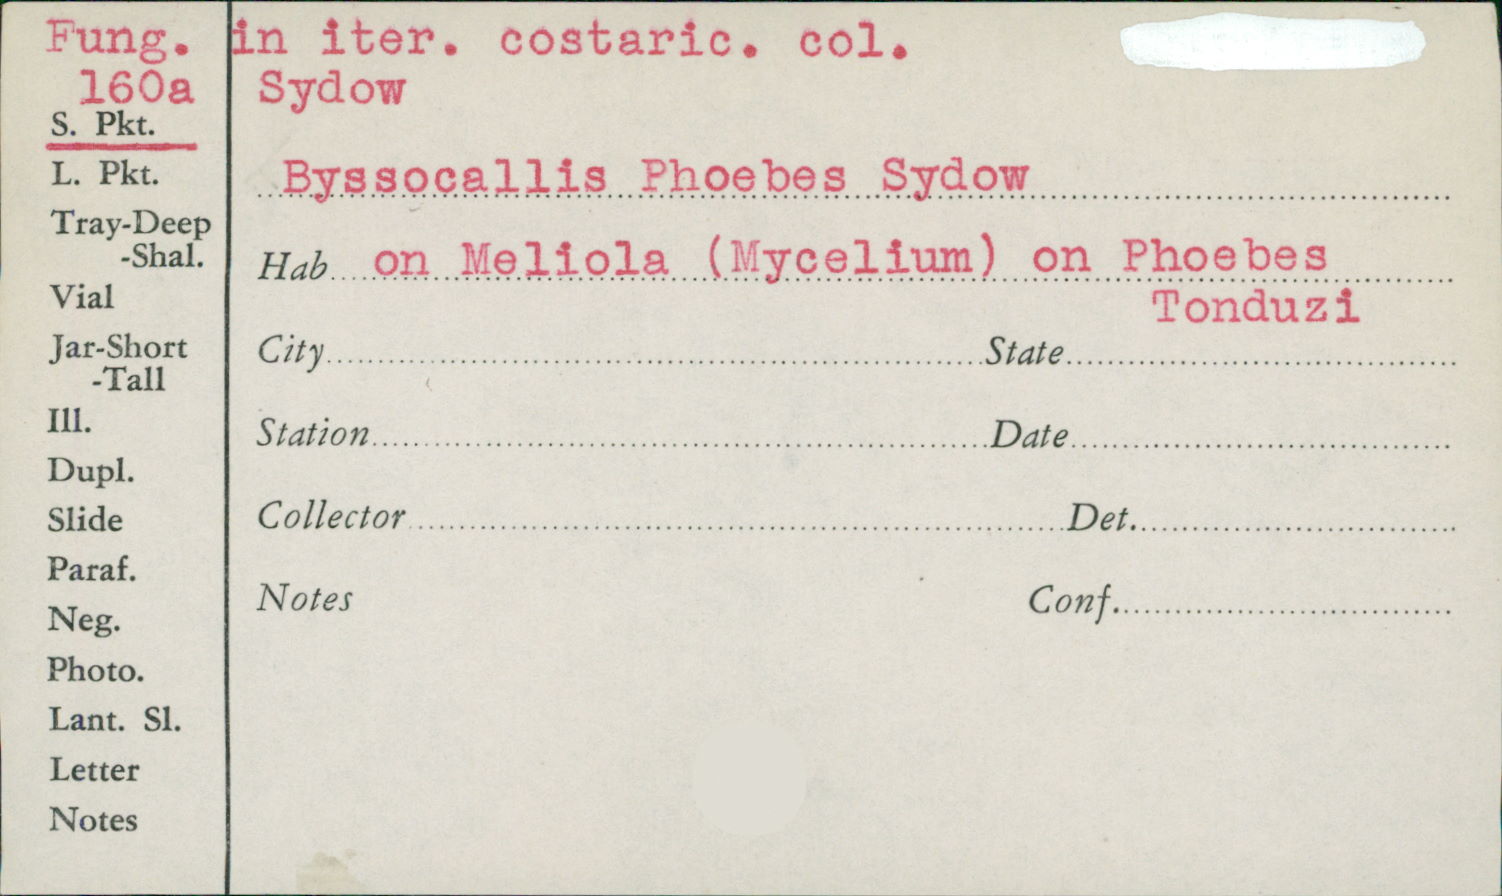 Byssocallis phoebes image